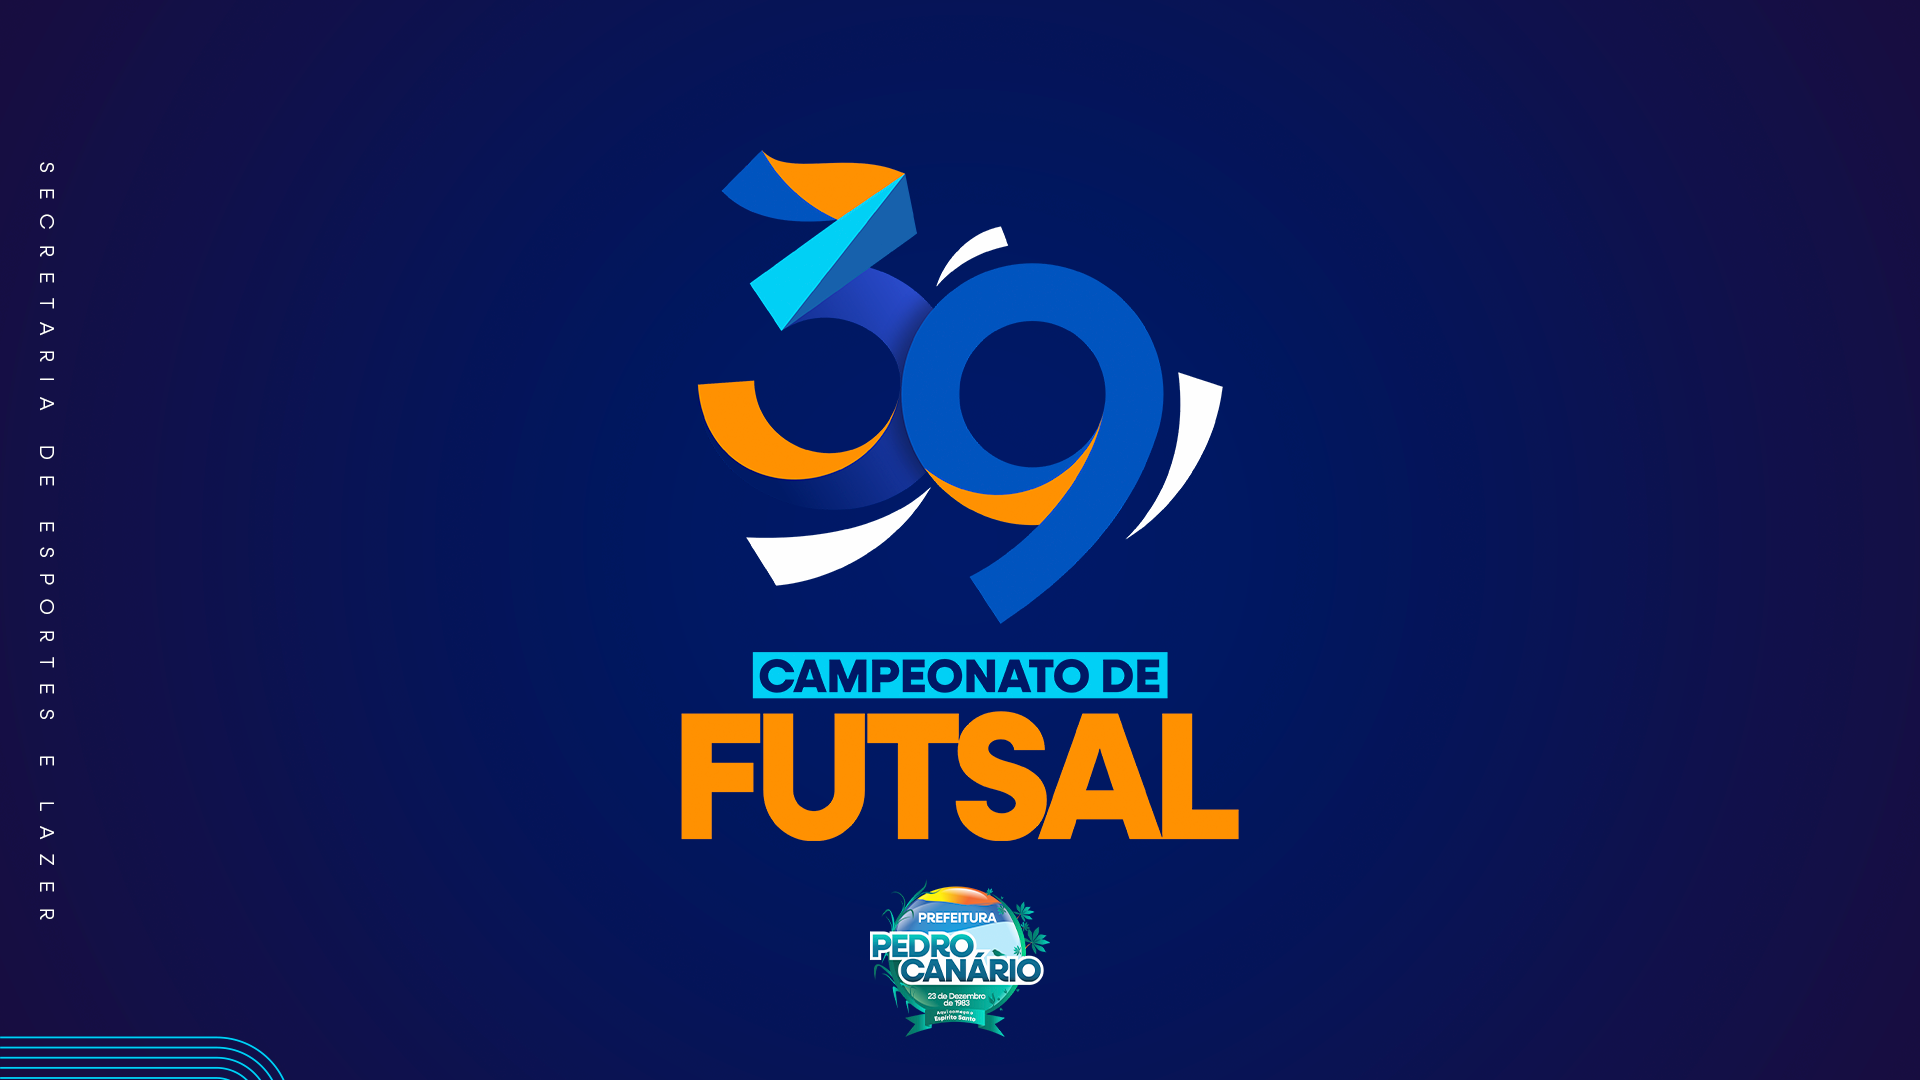 NOTÍCIA: 39º Campeonato Municipal de Futsal começa nesta segunda-feira em Pedro Canário 